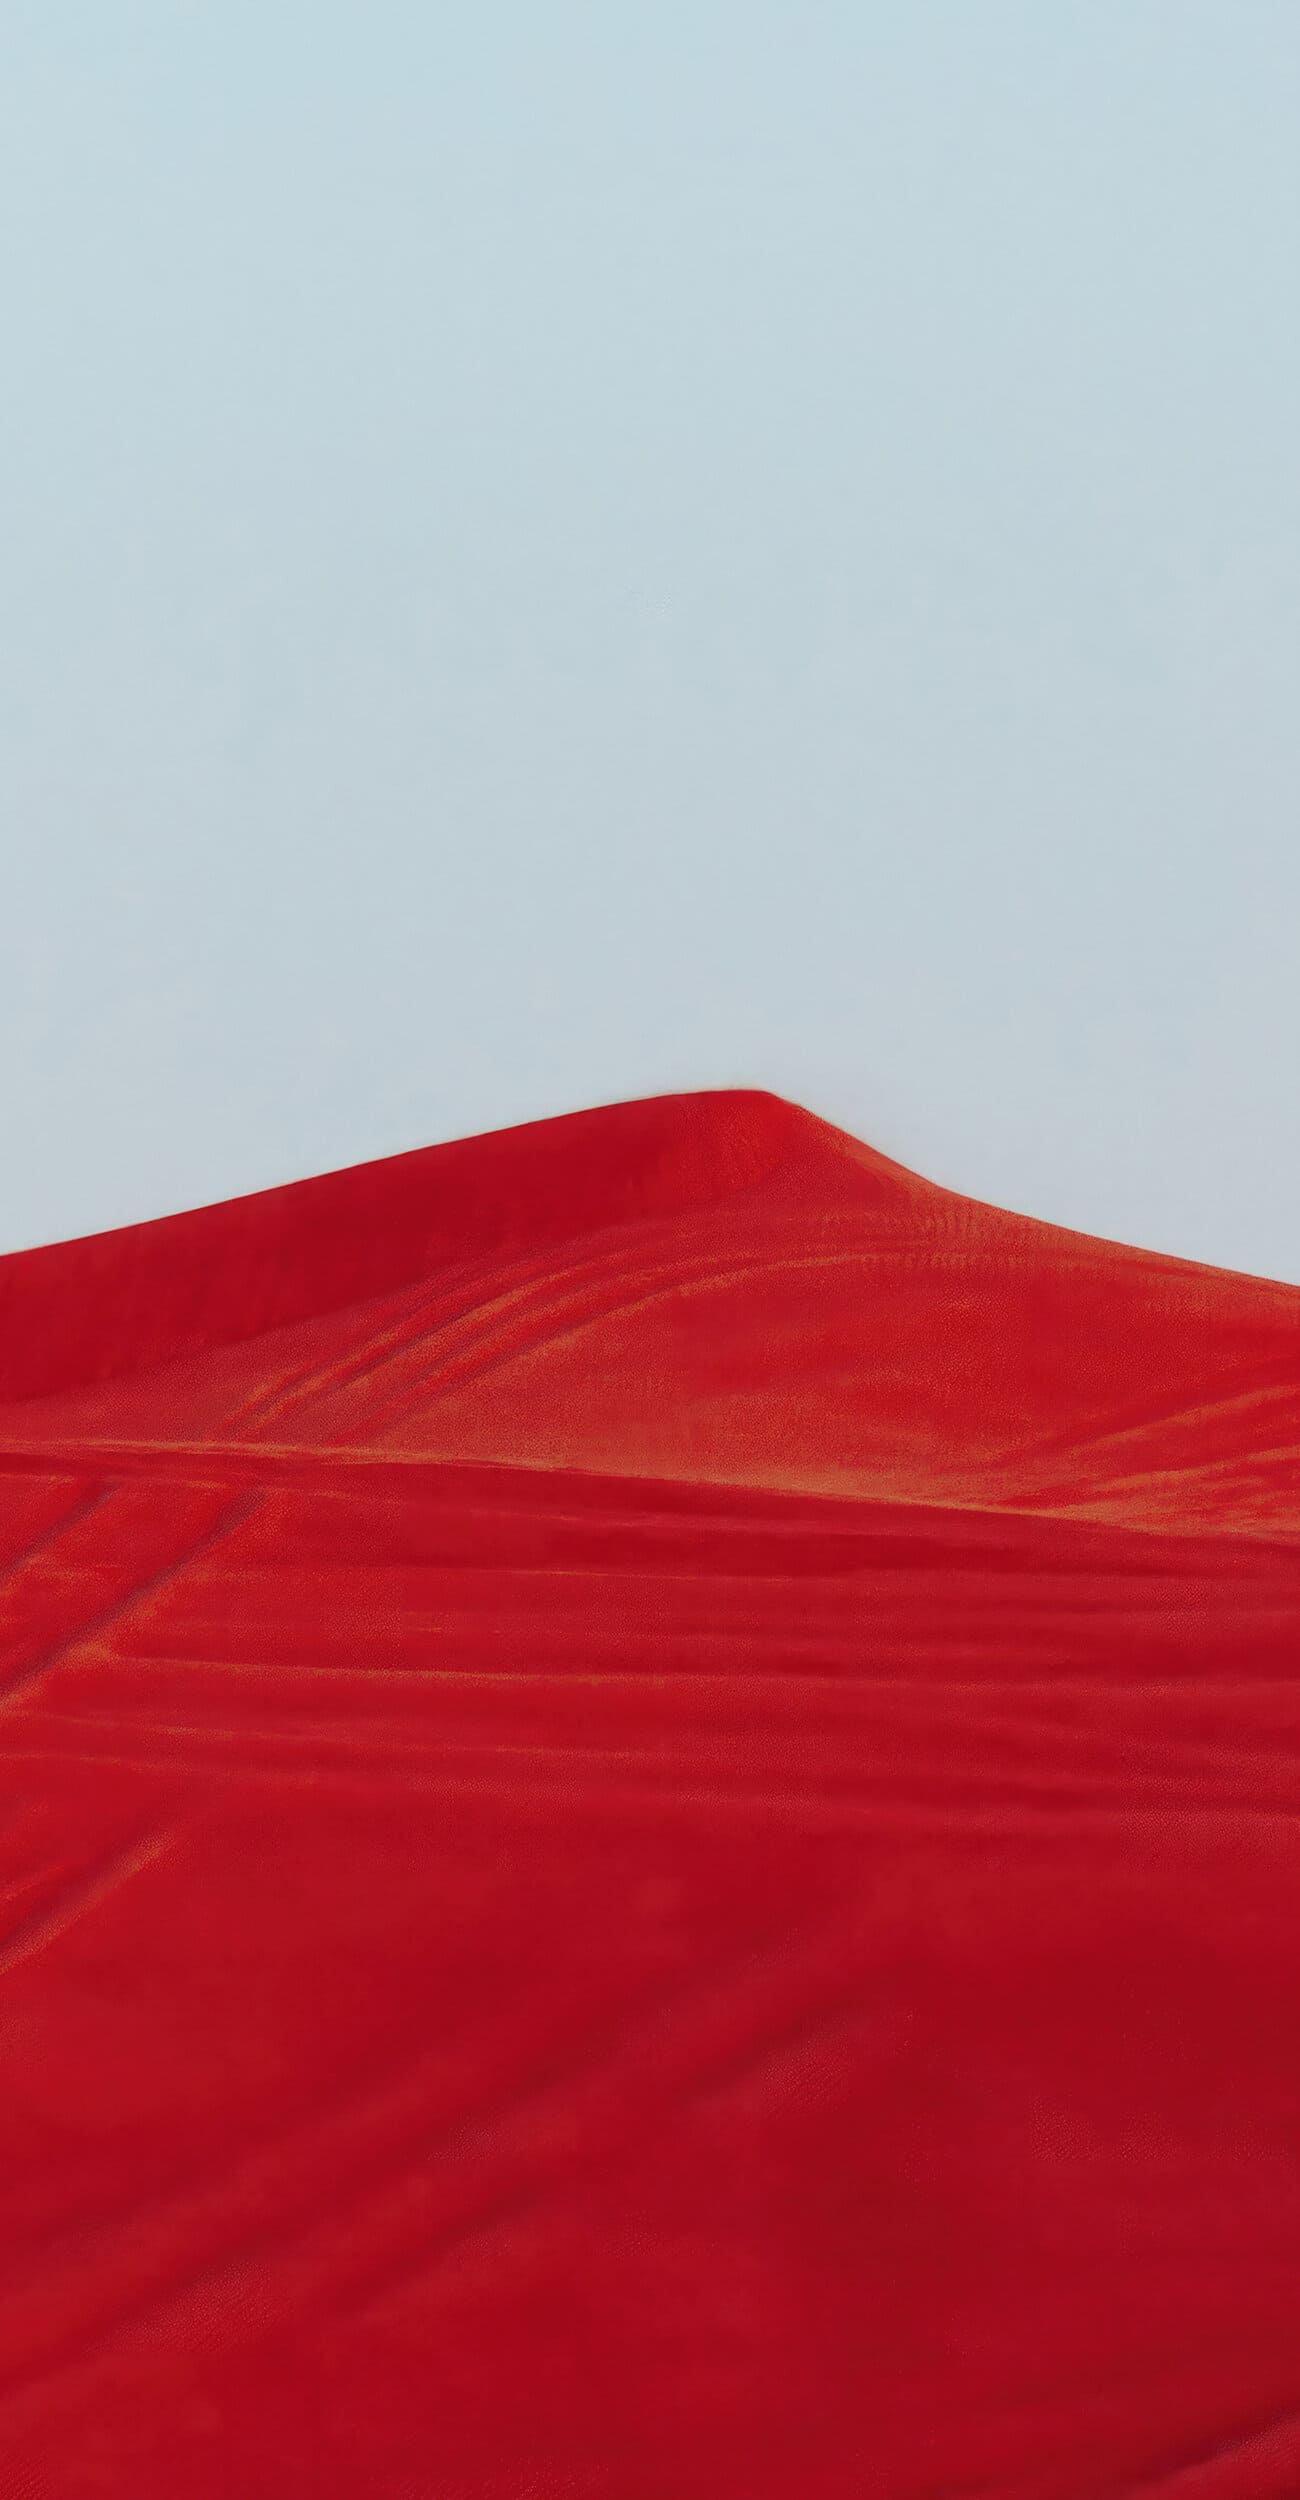 خلفية طبيعة كثبان رملية حمراء بدقة 4K للايفون